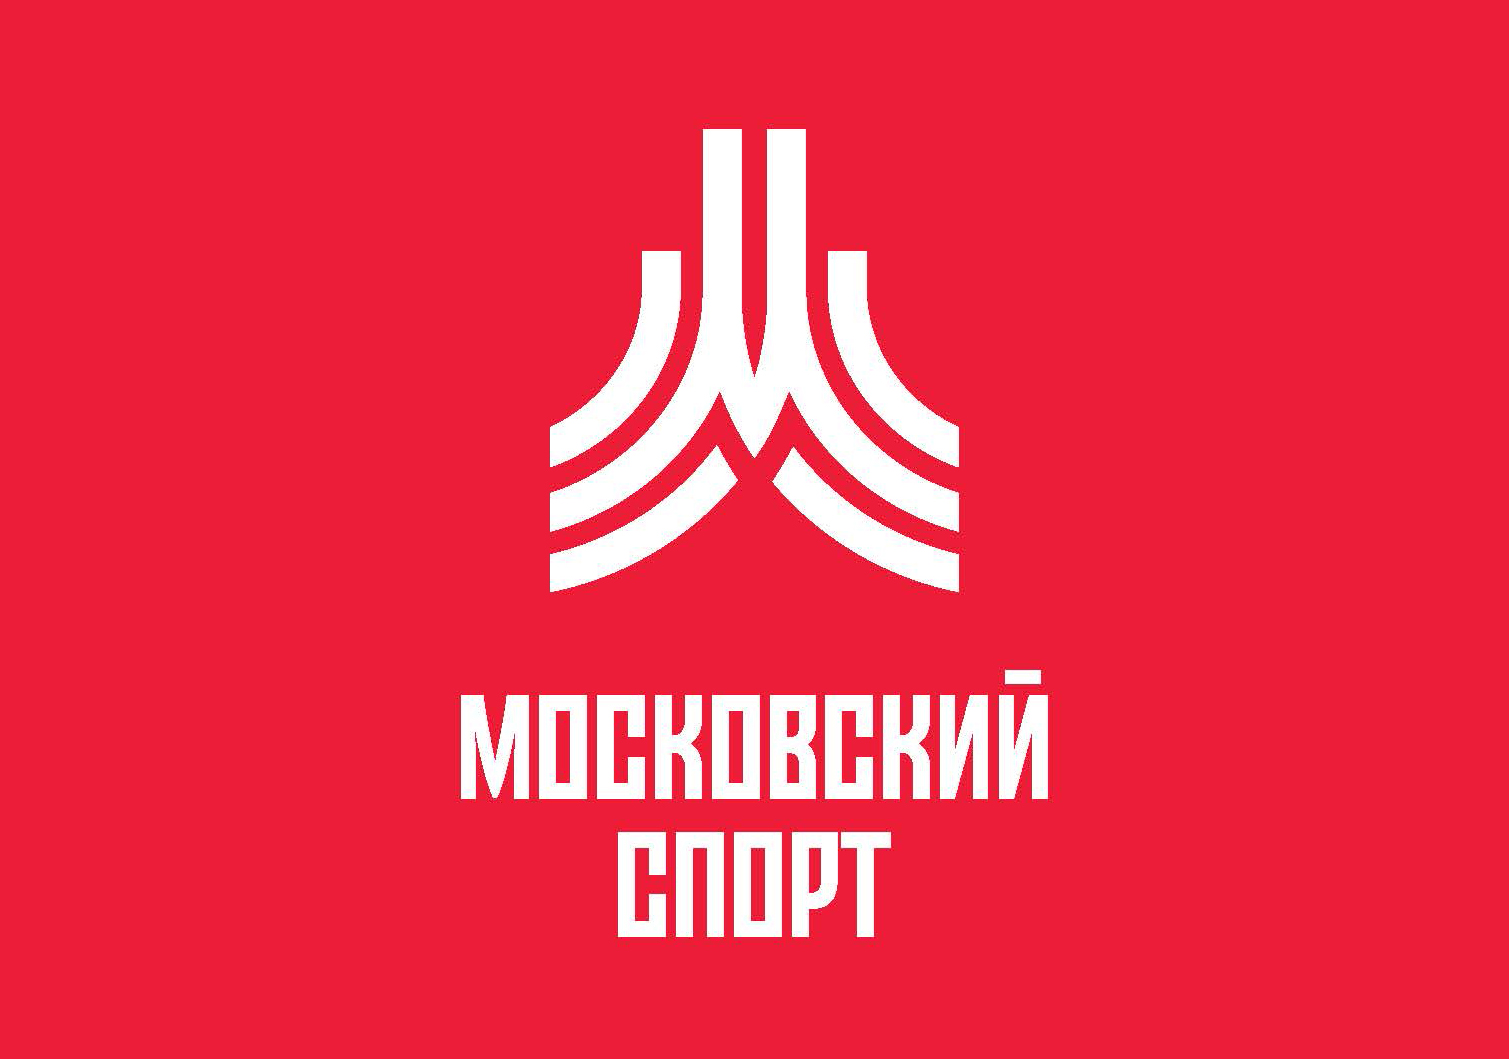 Департамент спорта города Москвы